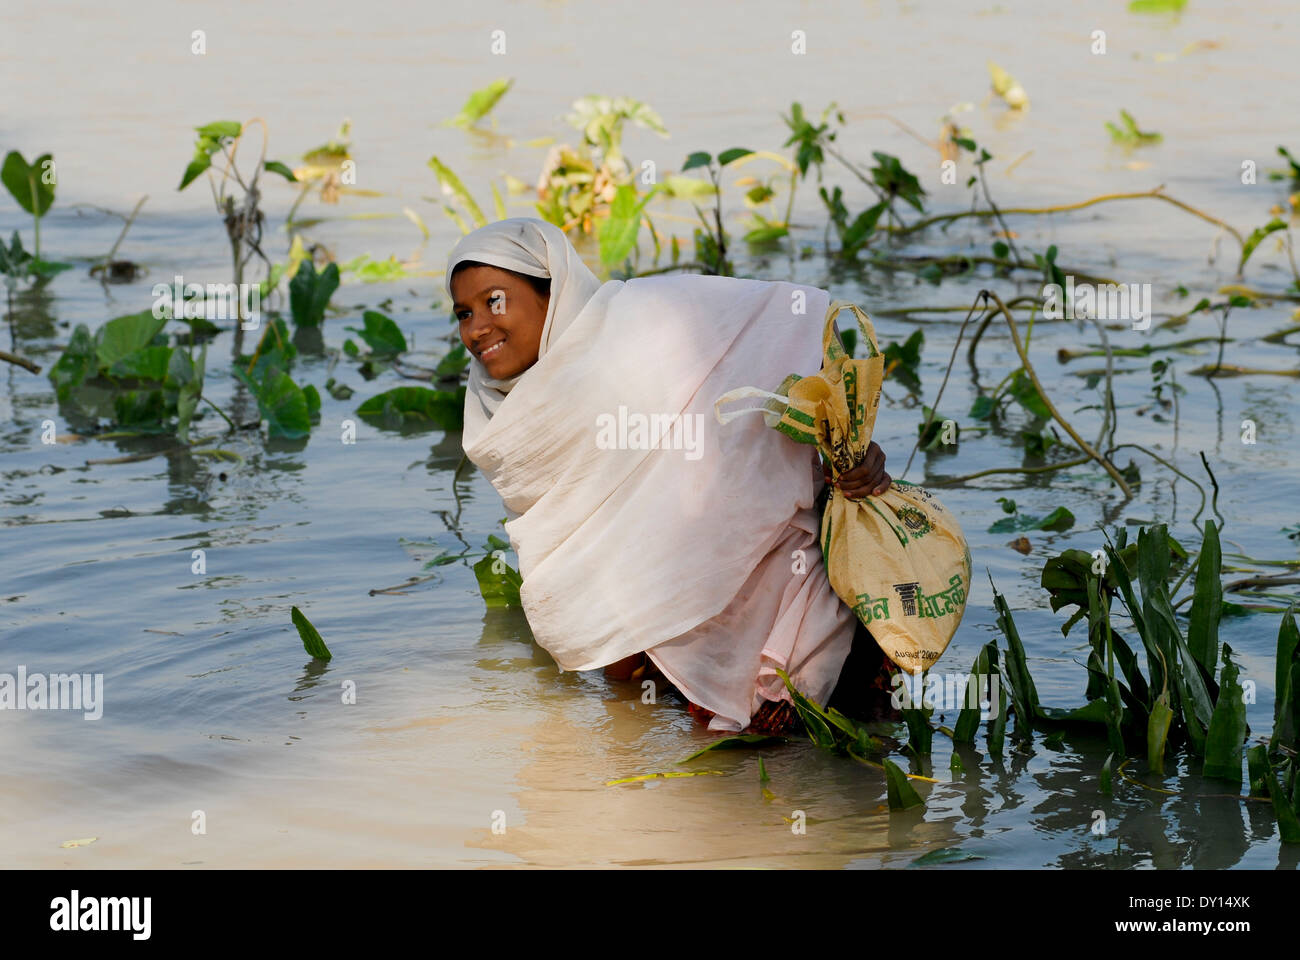 Bangladesch Distrikt Bagerhat, Zyklon Sidr und Flut zerstören Dörfer im Süden Khali, Fluss Balaswar, die Verteilung der Hilfsgüter an die betroffenen Menschen in den Dörfern, Mädchen im Wasser waten mit Taschen mit Hilfsgütern Stockfoto